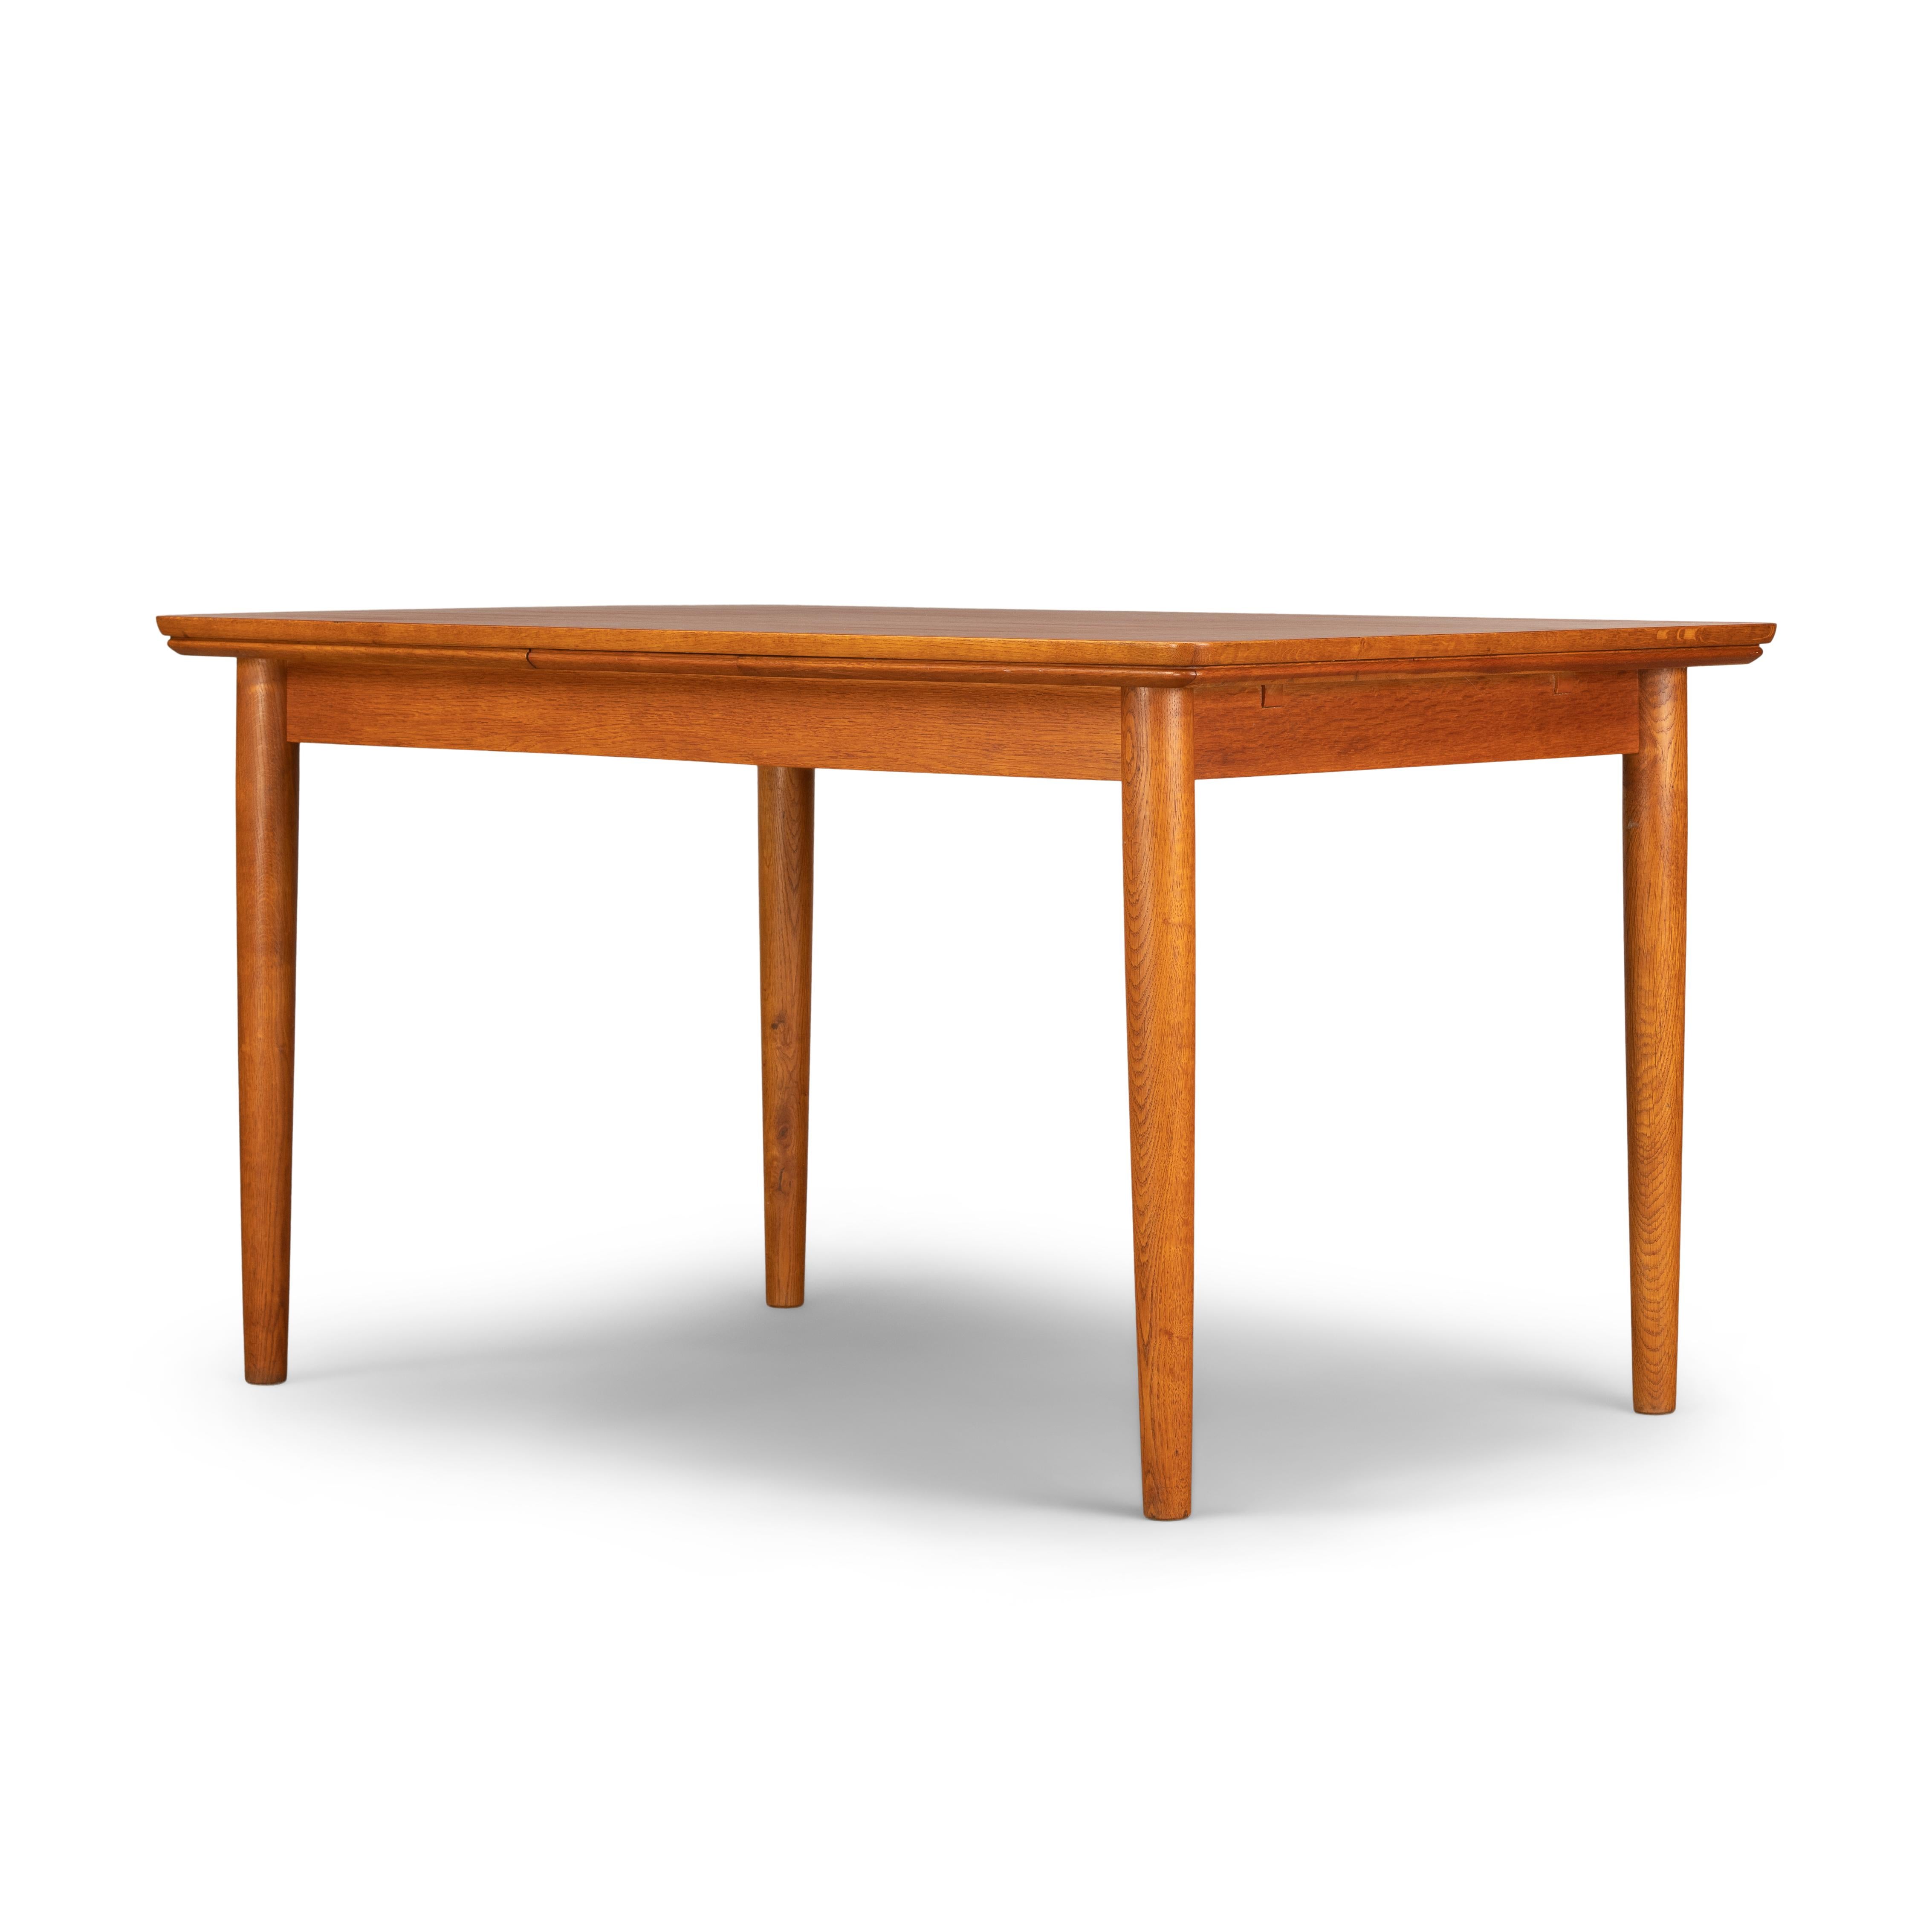 Cette table de salle à manger danoise a été fabriquée dans les années 1960. Elle est dotée de pieds en teck massif et de deux rallonges qui mesurent chacune 51 cm et permettent d'allonger la table jusqu'à 232 cm. Les rallonges sont cachées sous le